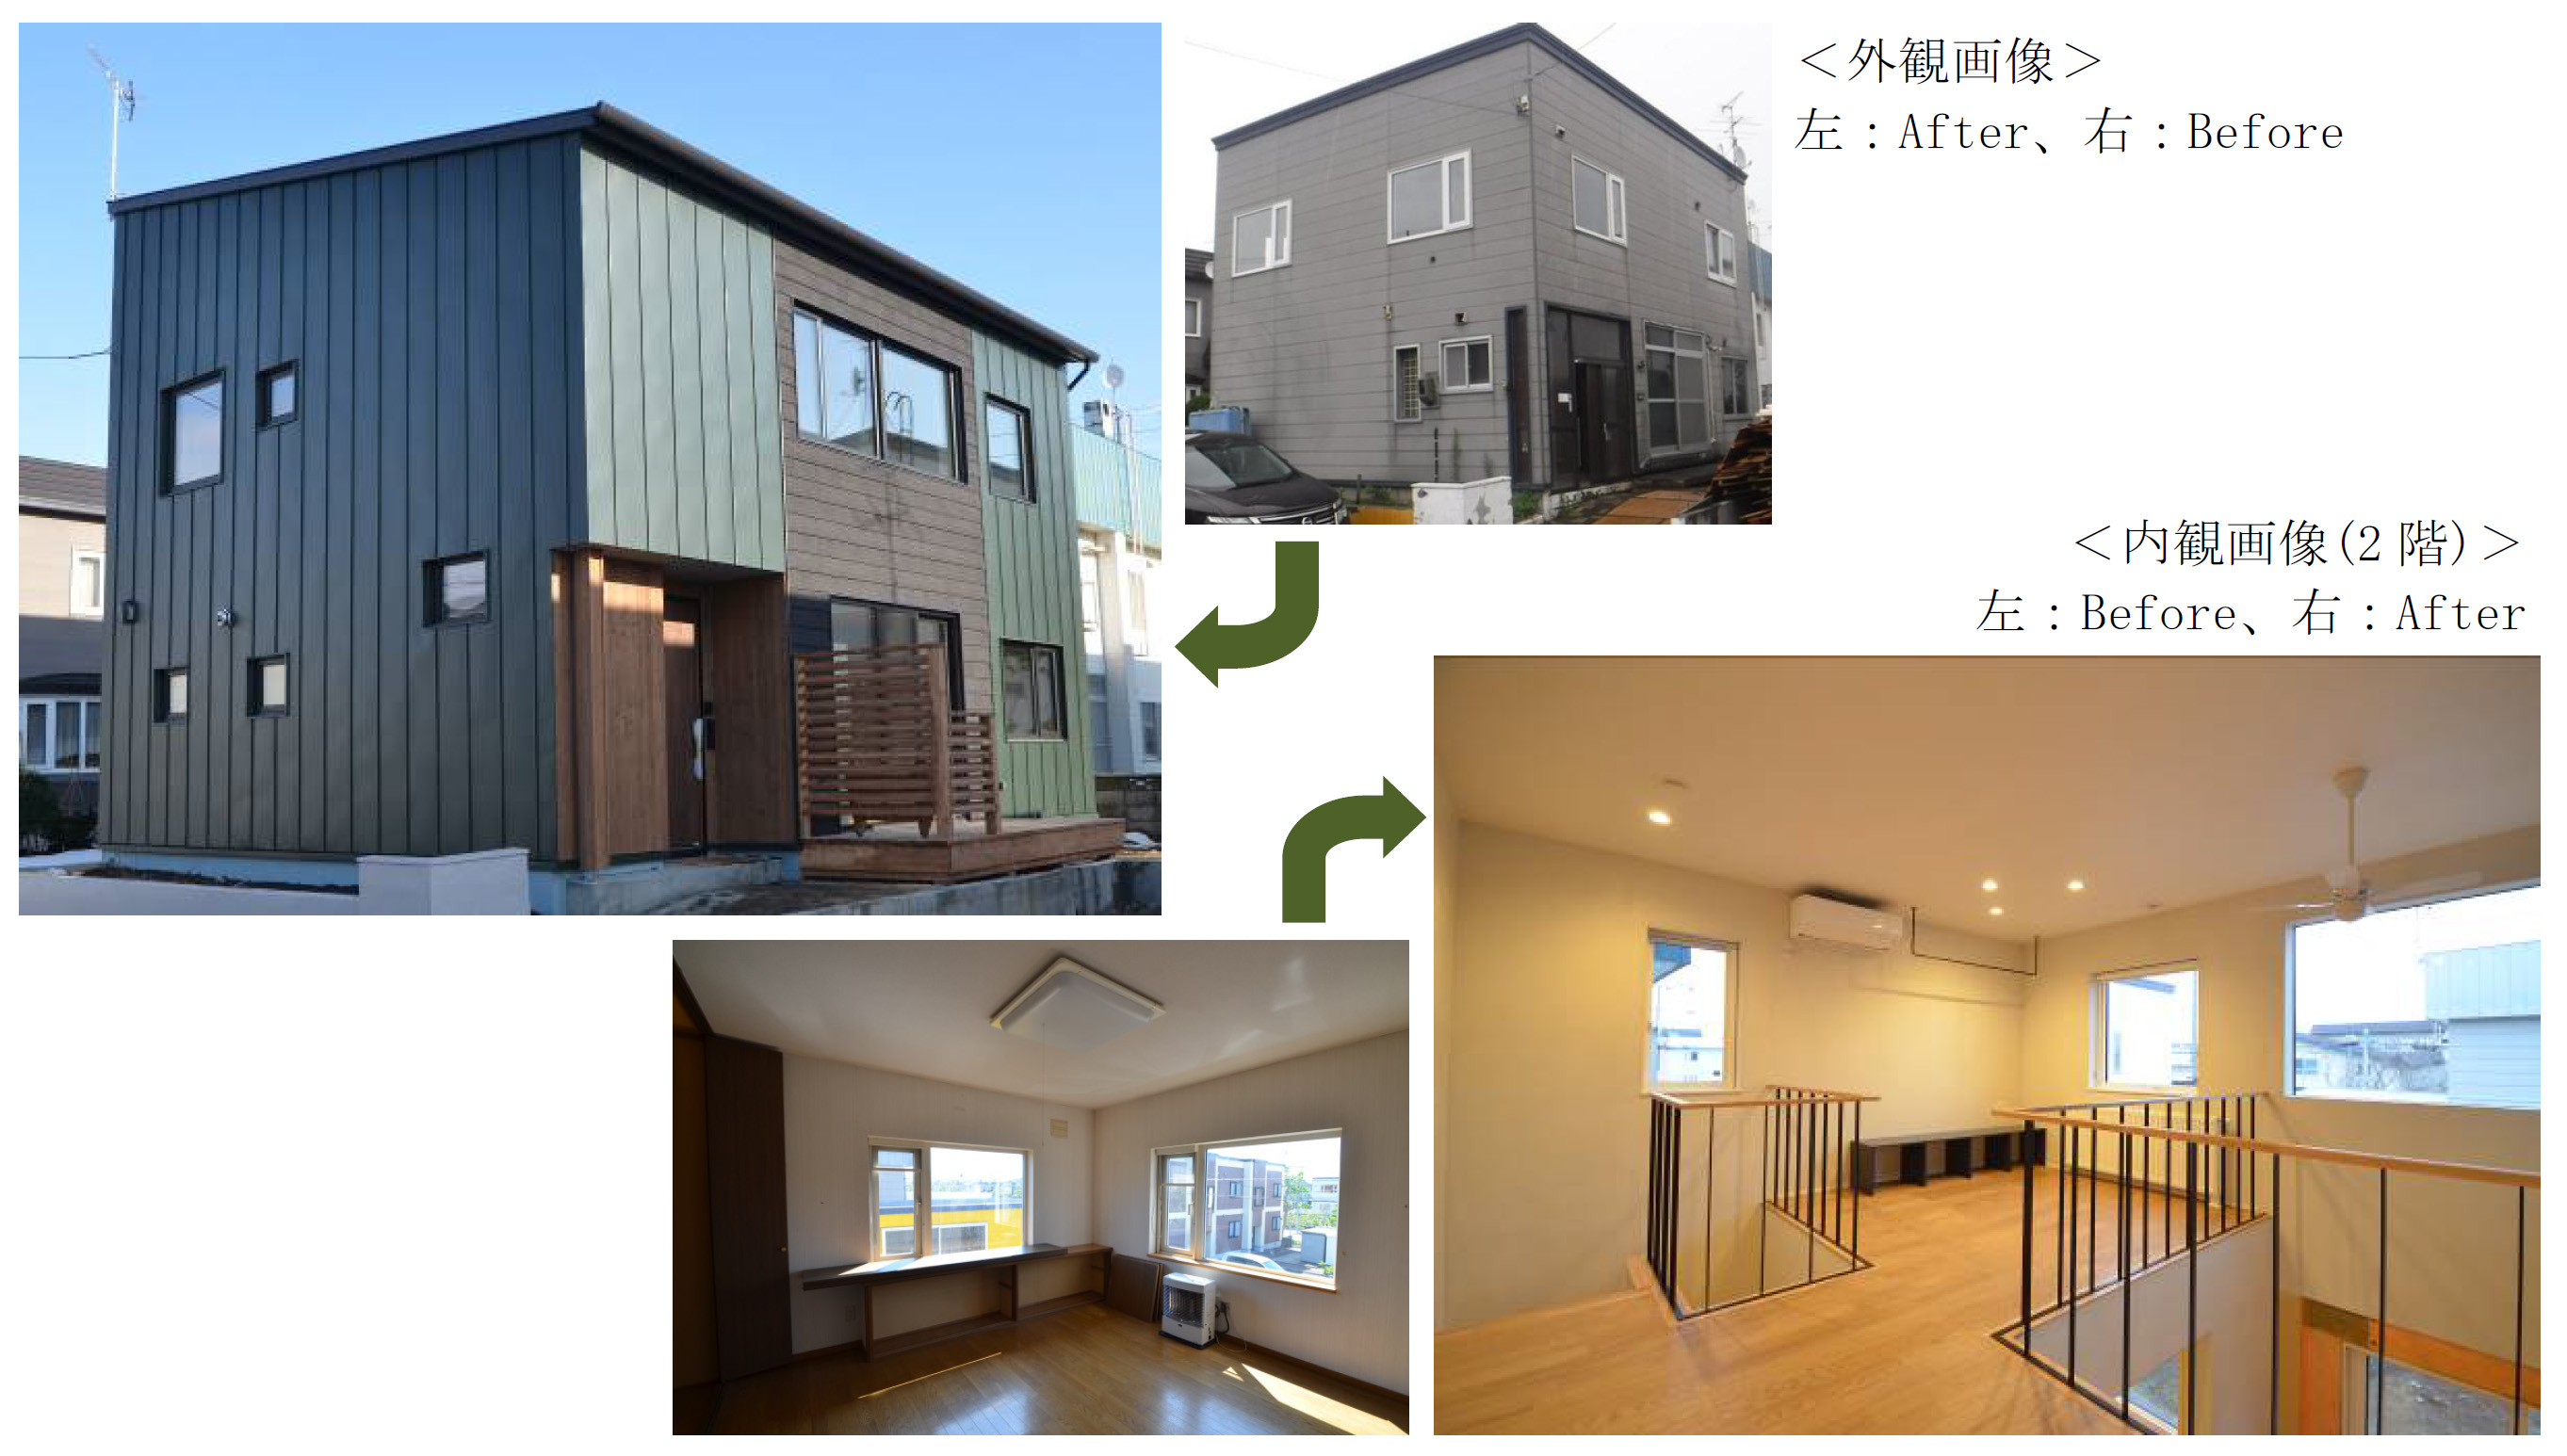 築38年の中古戸建て住宅が新築よりも暖かく 強い リノベーションでｌｃｃｍ住宅相当を実現した 北海道の家 Ykk Ap株式会社のプレスリリース